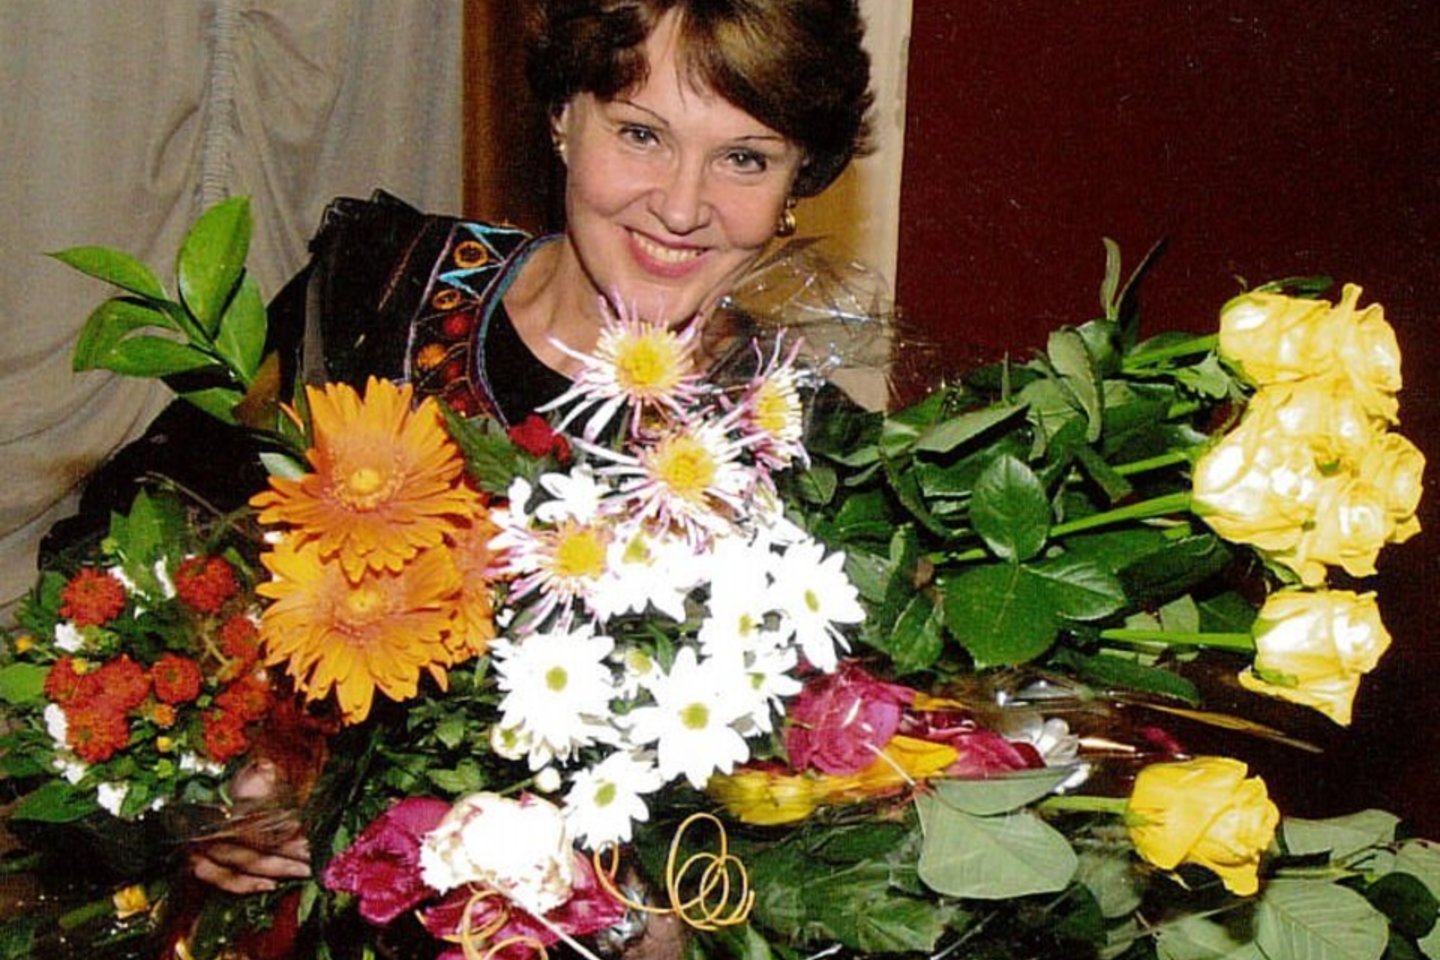  Dainininkė Giedrė Kaukaitė po 35-mečio sceninės ir 25-mečio pedagoginės veiklos minėjimo Vilniaus rotušėje 2002 metais.<br>Asmeninio archyvo nuotr.